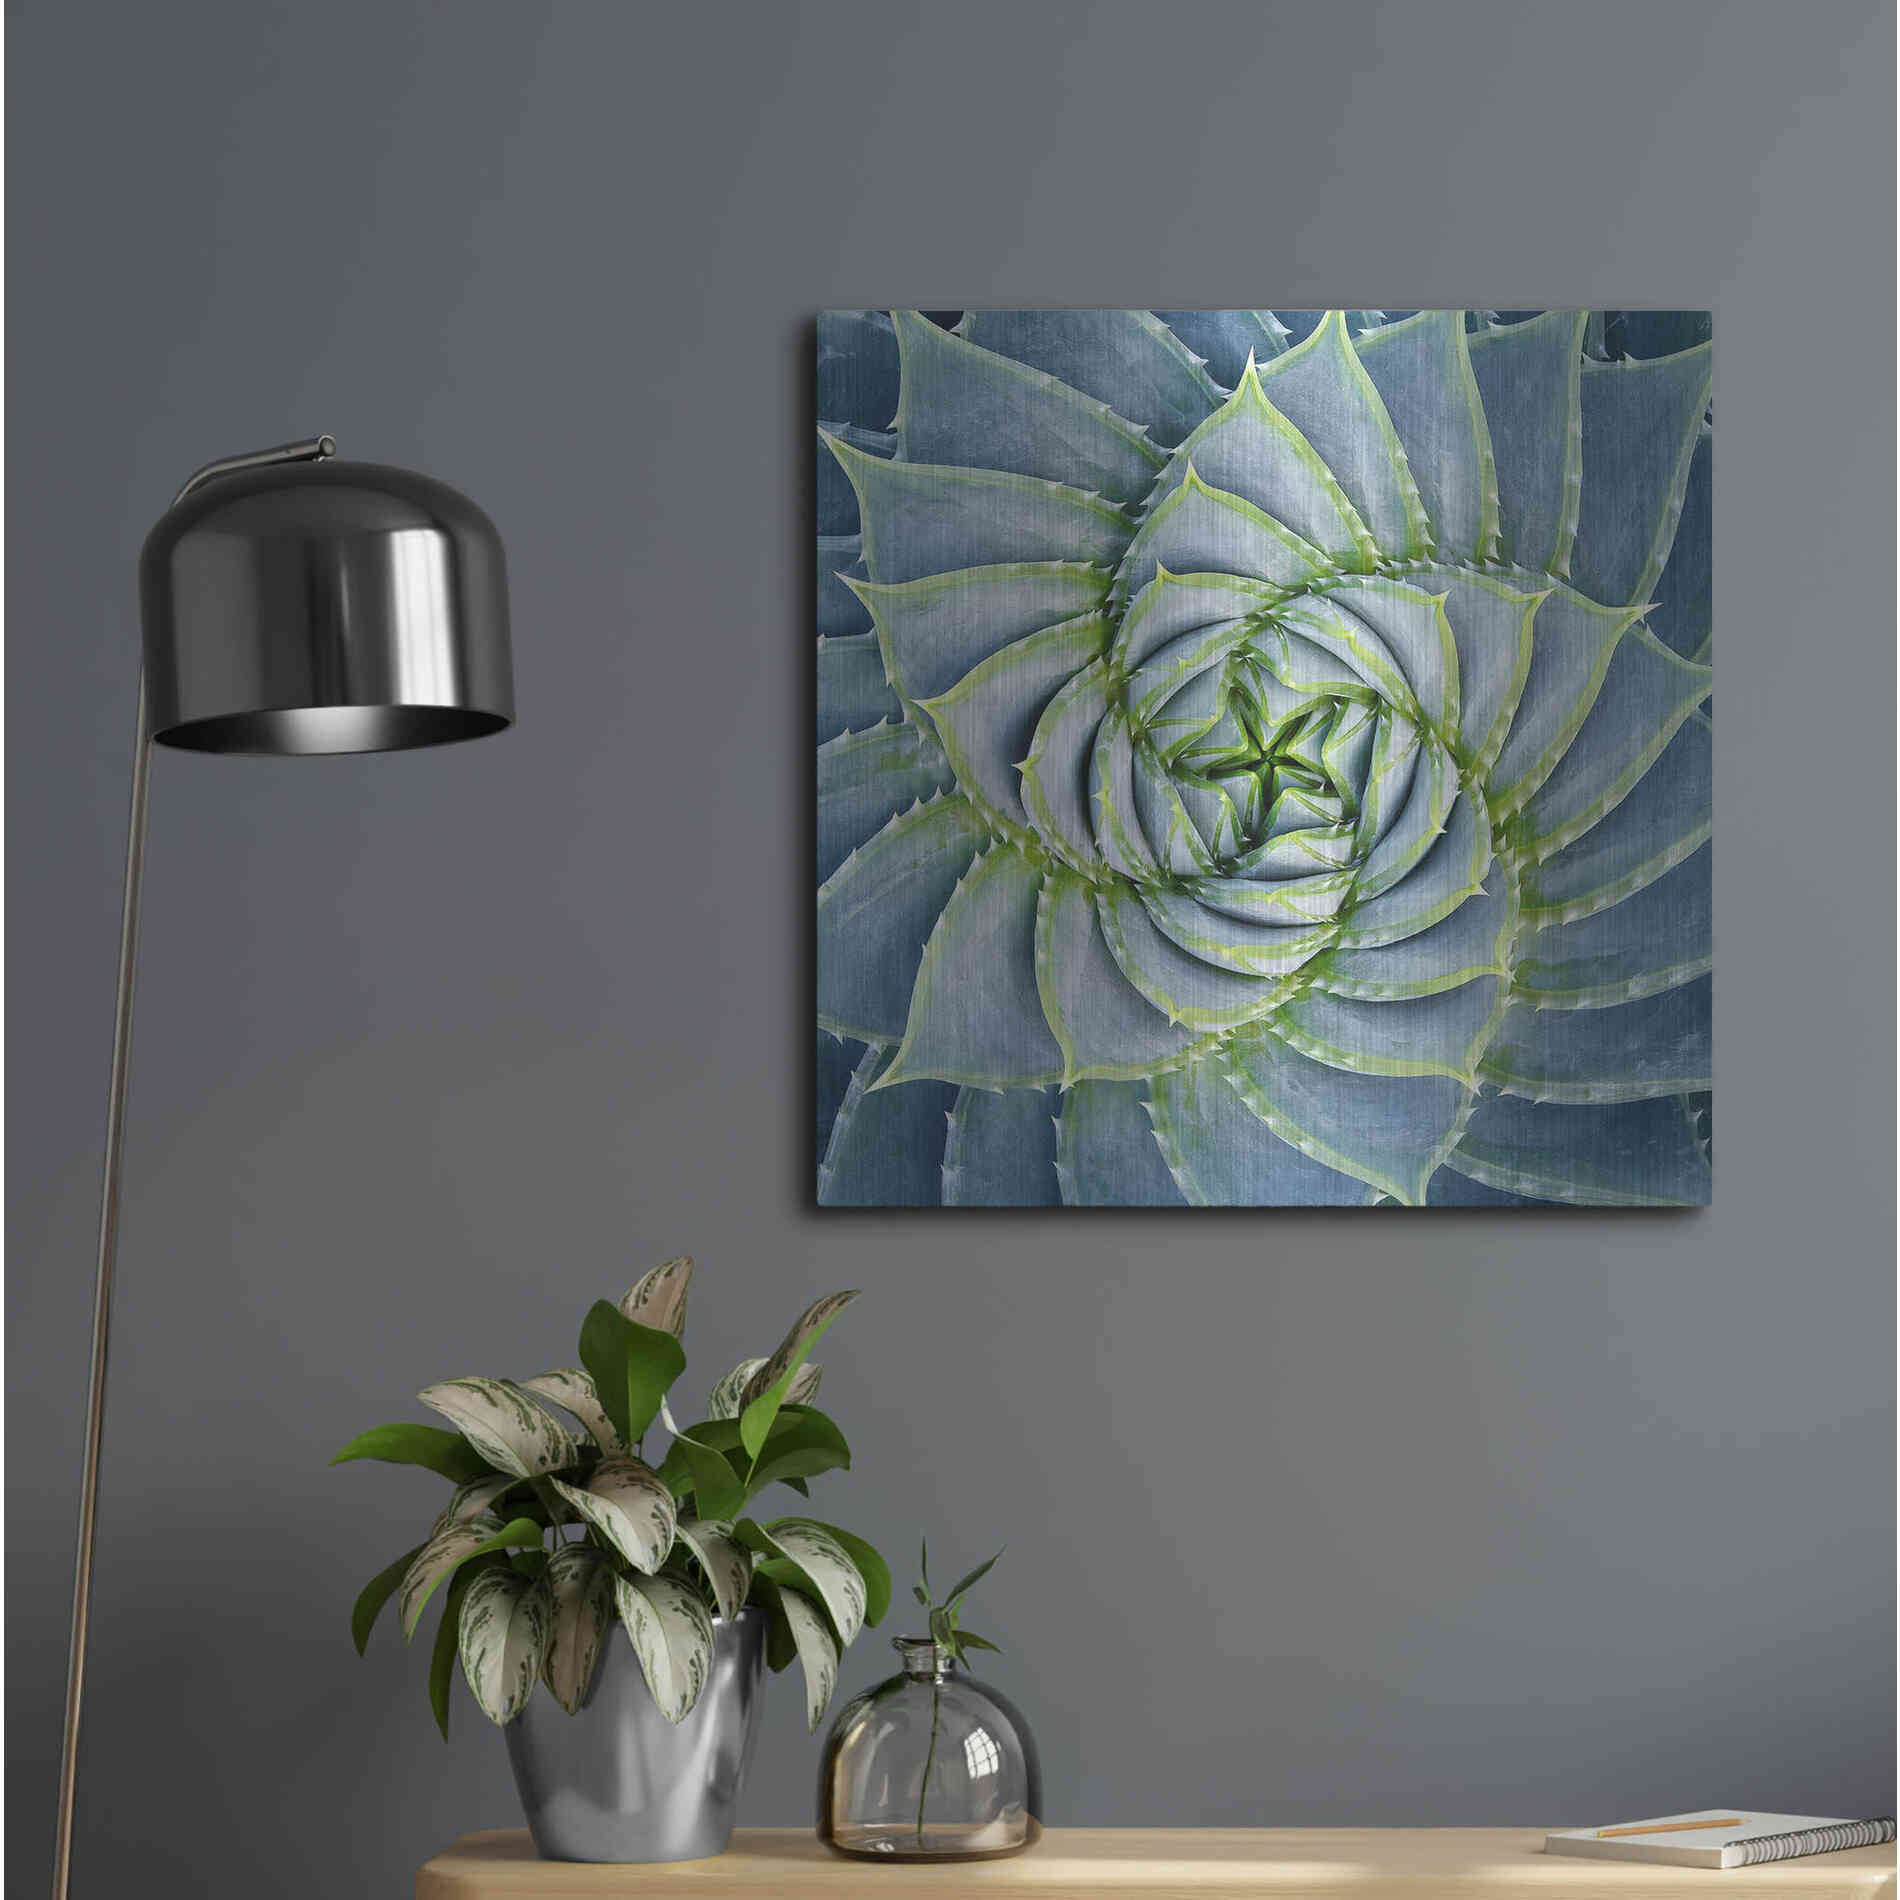 Luxe Metal Art 'Spiral Succulent' by Jan Bell Metal Wall Art,24x24